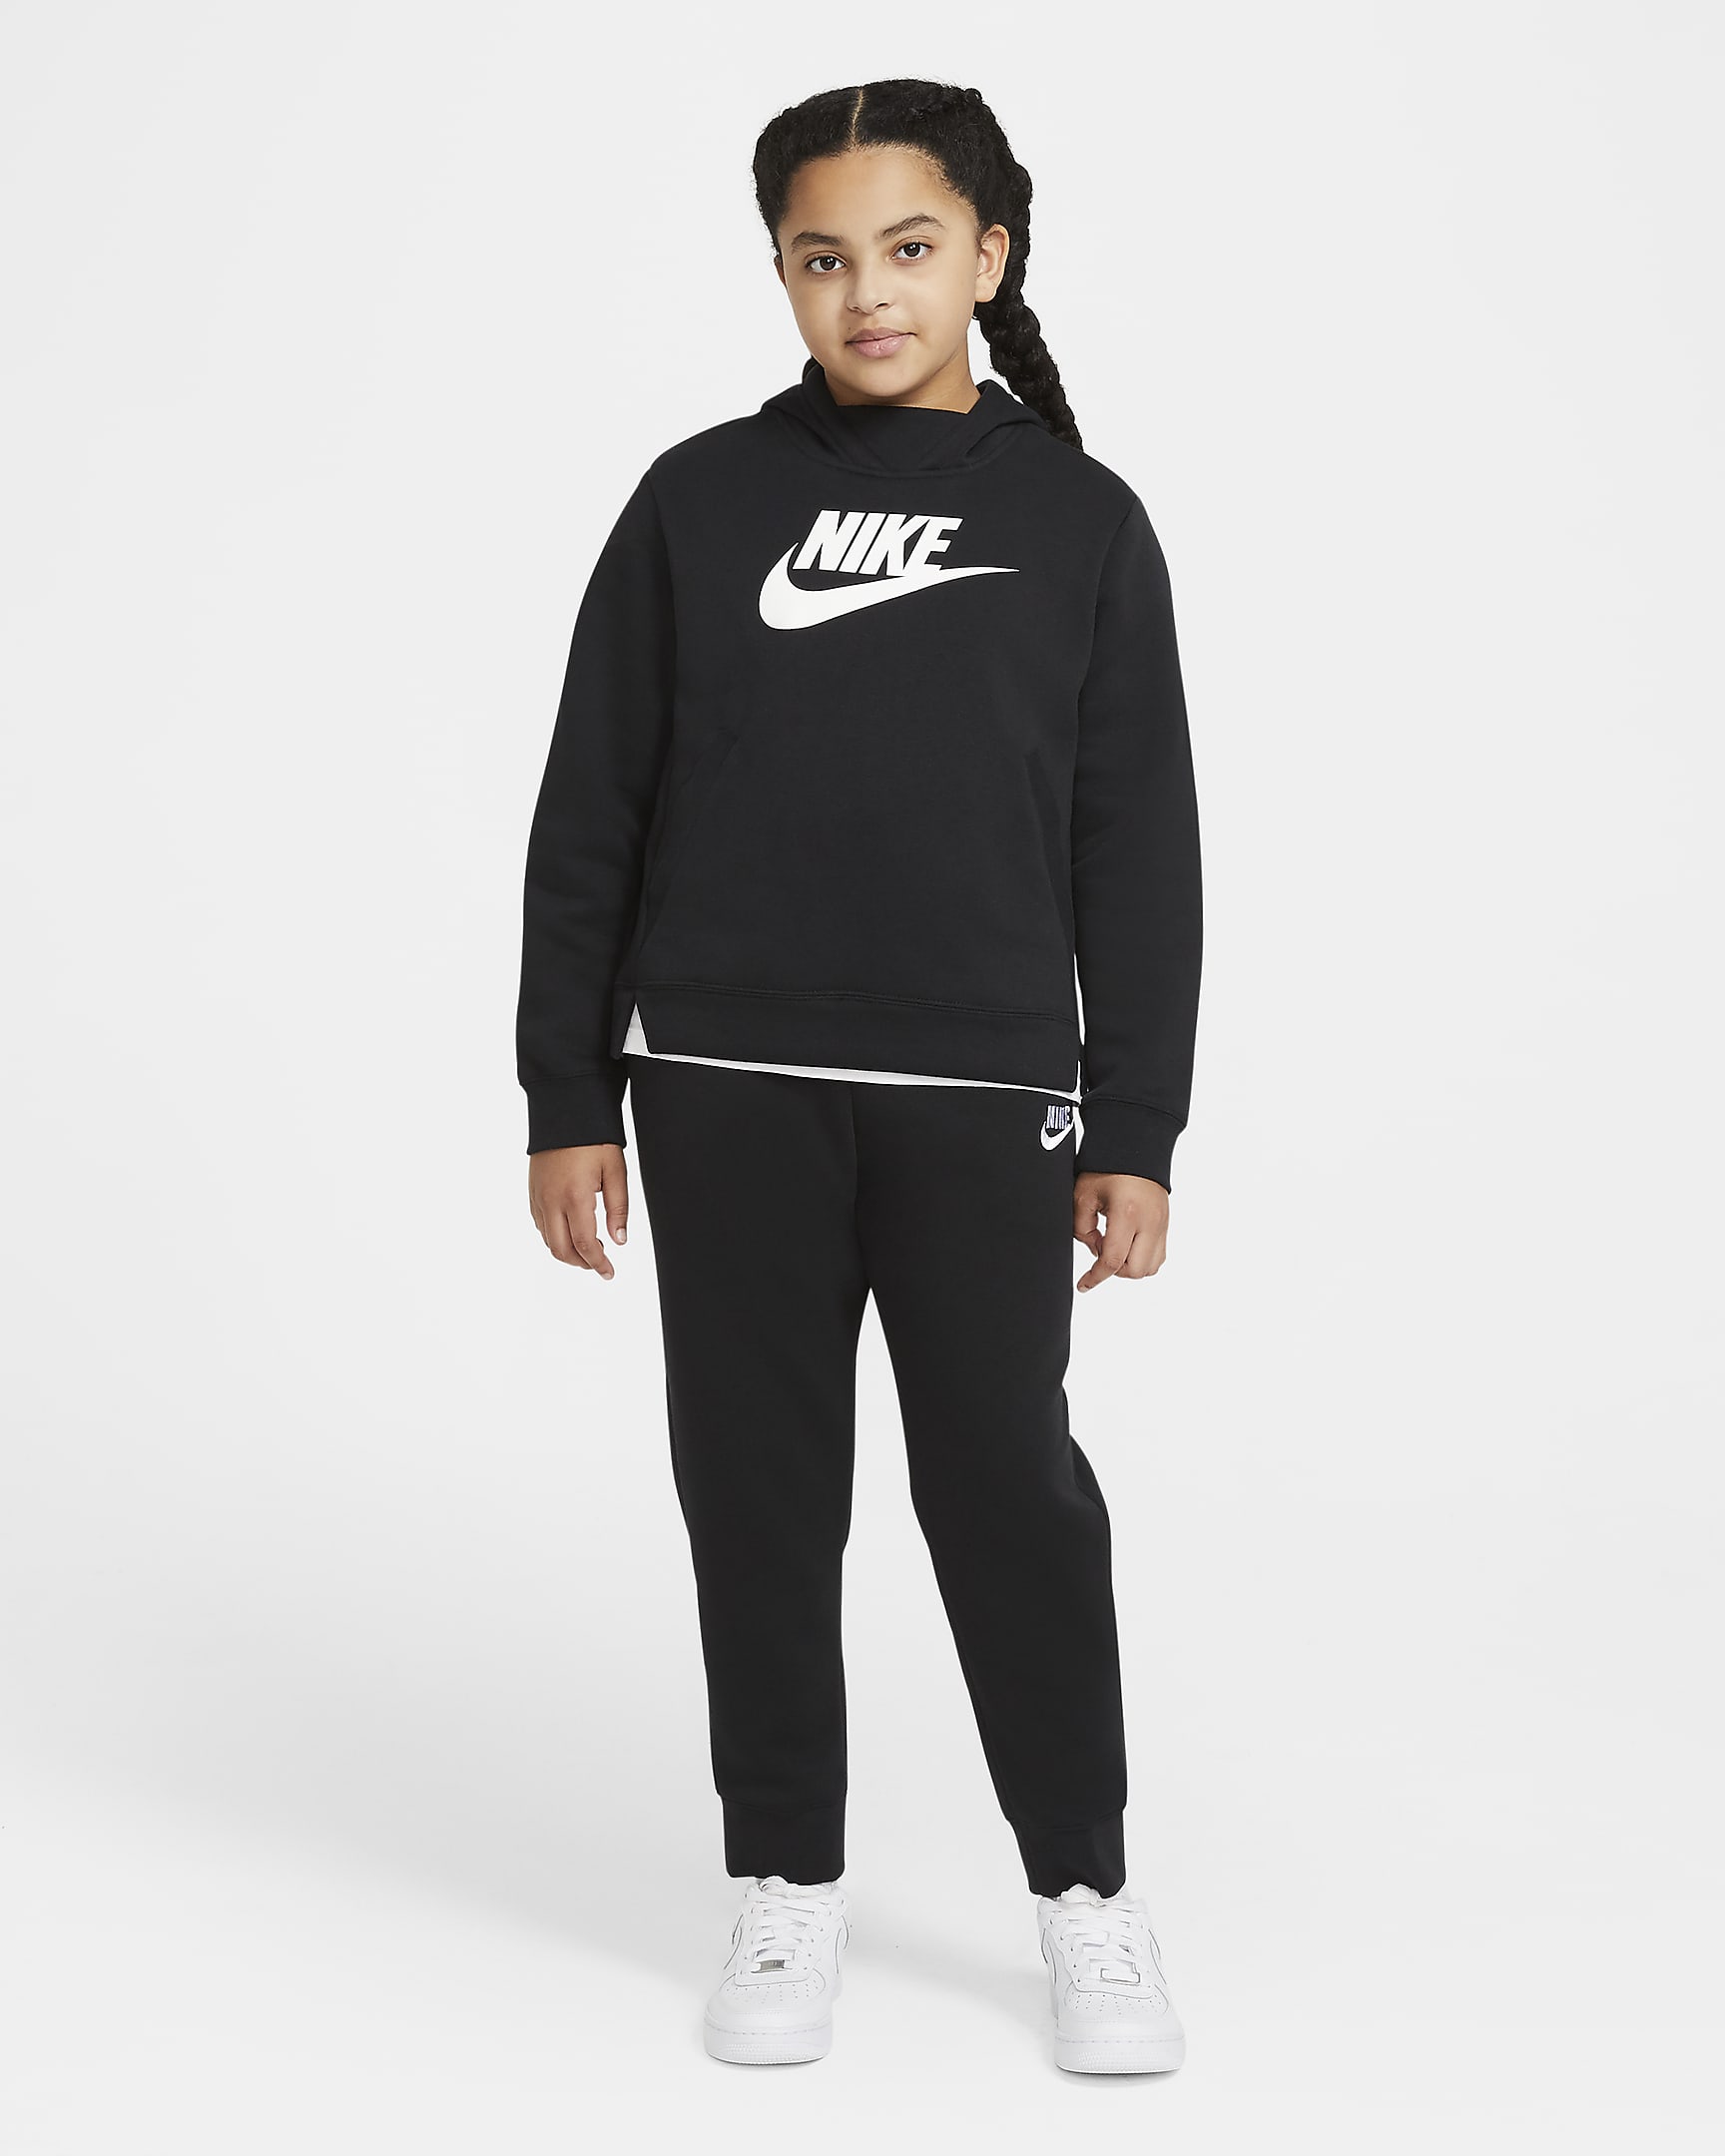 Nike Sportswear Older Kids' (Girls') Trousers (Extended Size). Nike RO